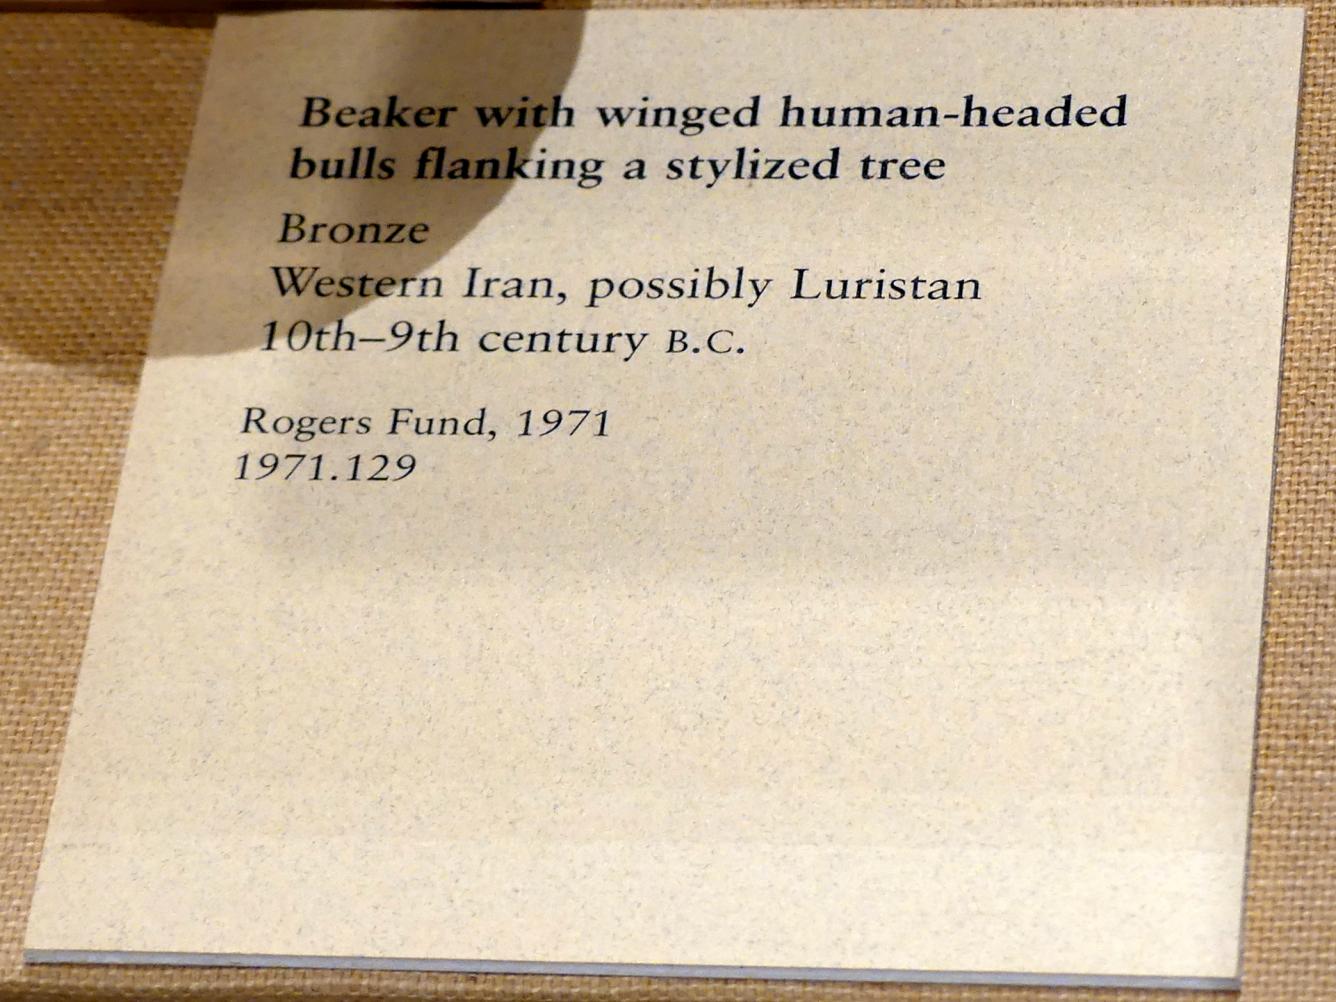 Becher mit geflügelten Bullen mit menschlichem Kopf, die einen stilisierten Baum flankieren, Eisenzeit II, 1000 - 700 v. Chr., 1000 - 800 v. Chr., Bild 2/2